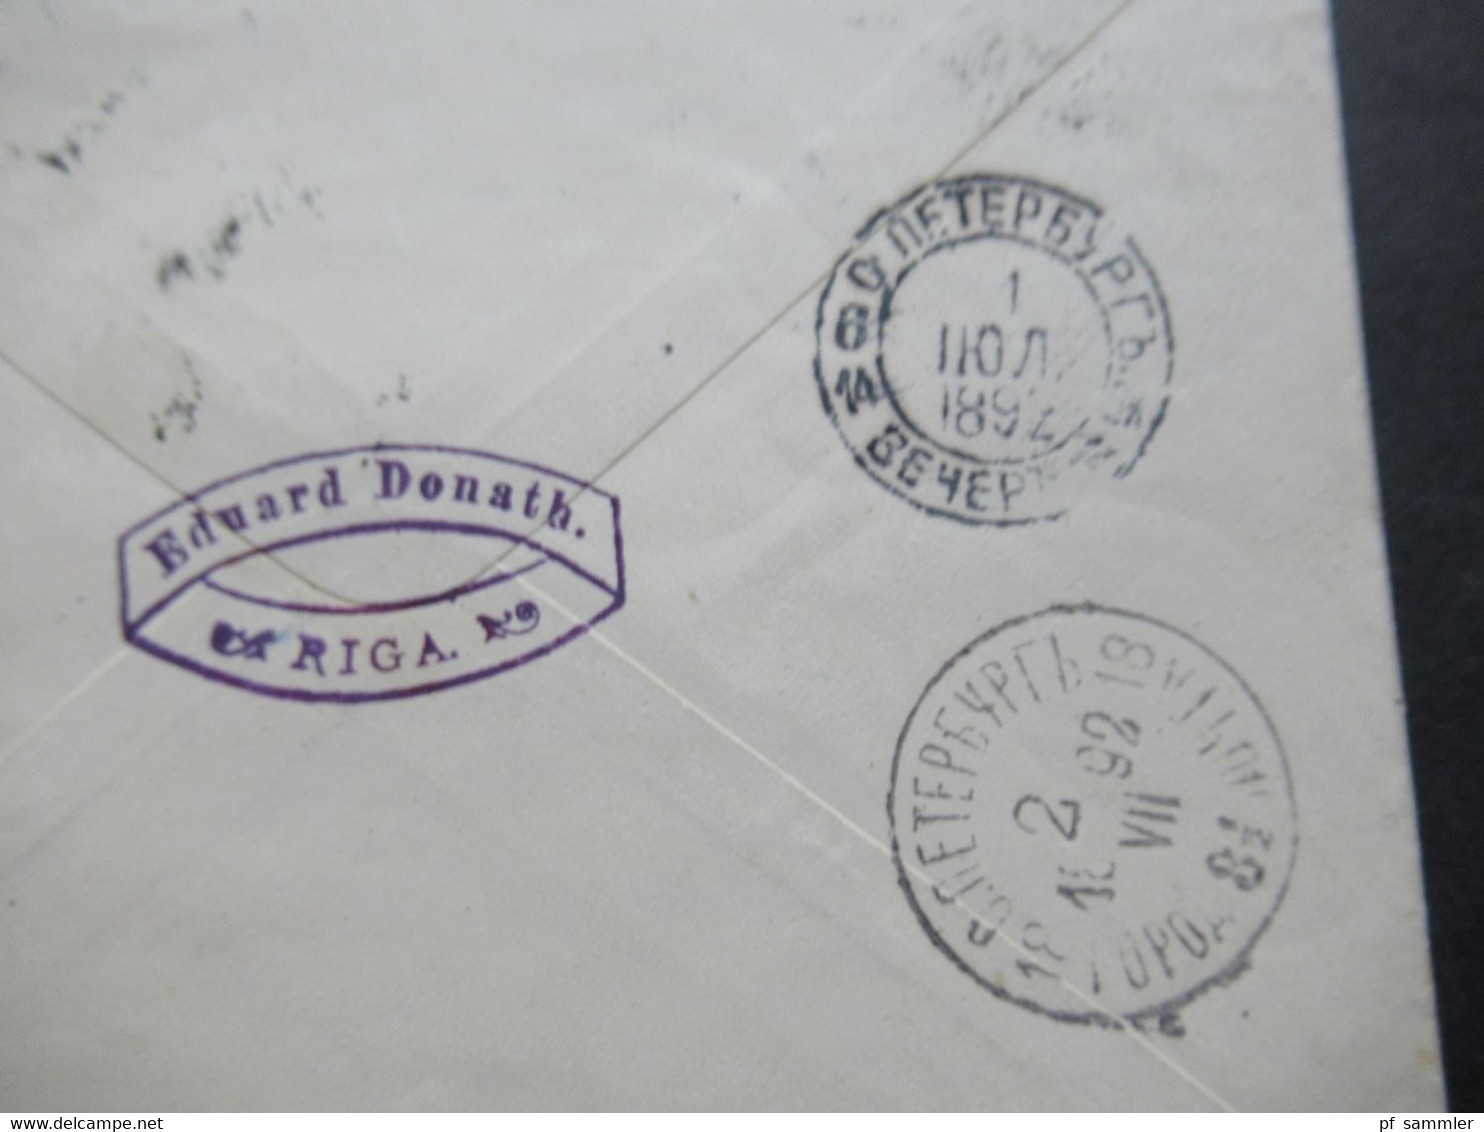 Russland / Lettland 1892 Ganzsachen Umschlag mit Zusatzfrankatur Abs. Stempel Eduard Donath Riga